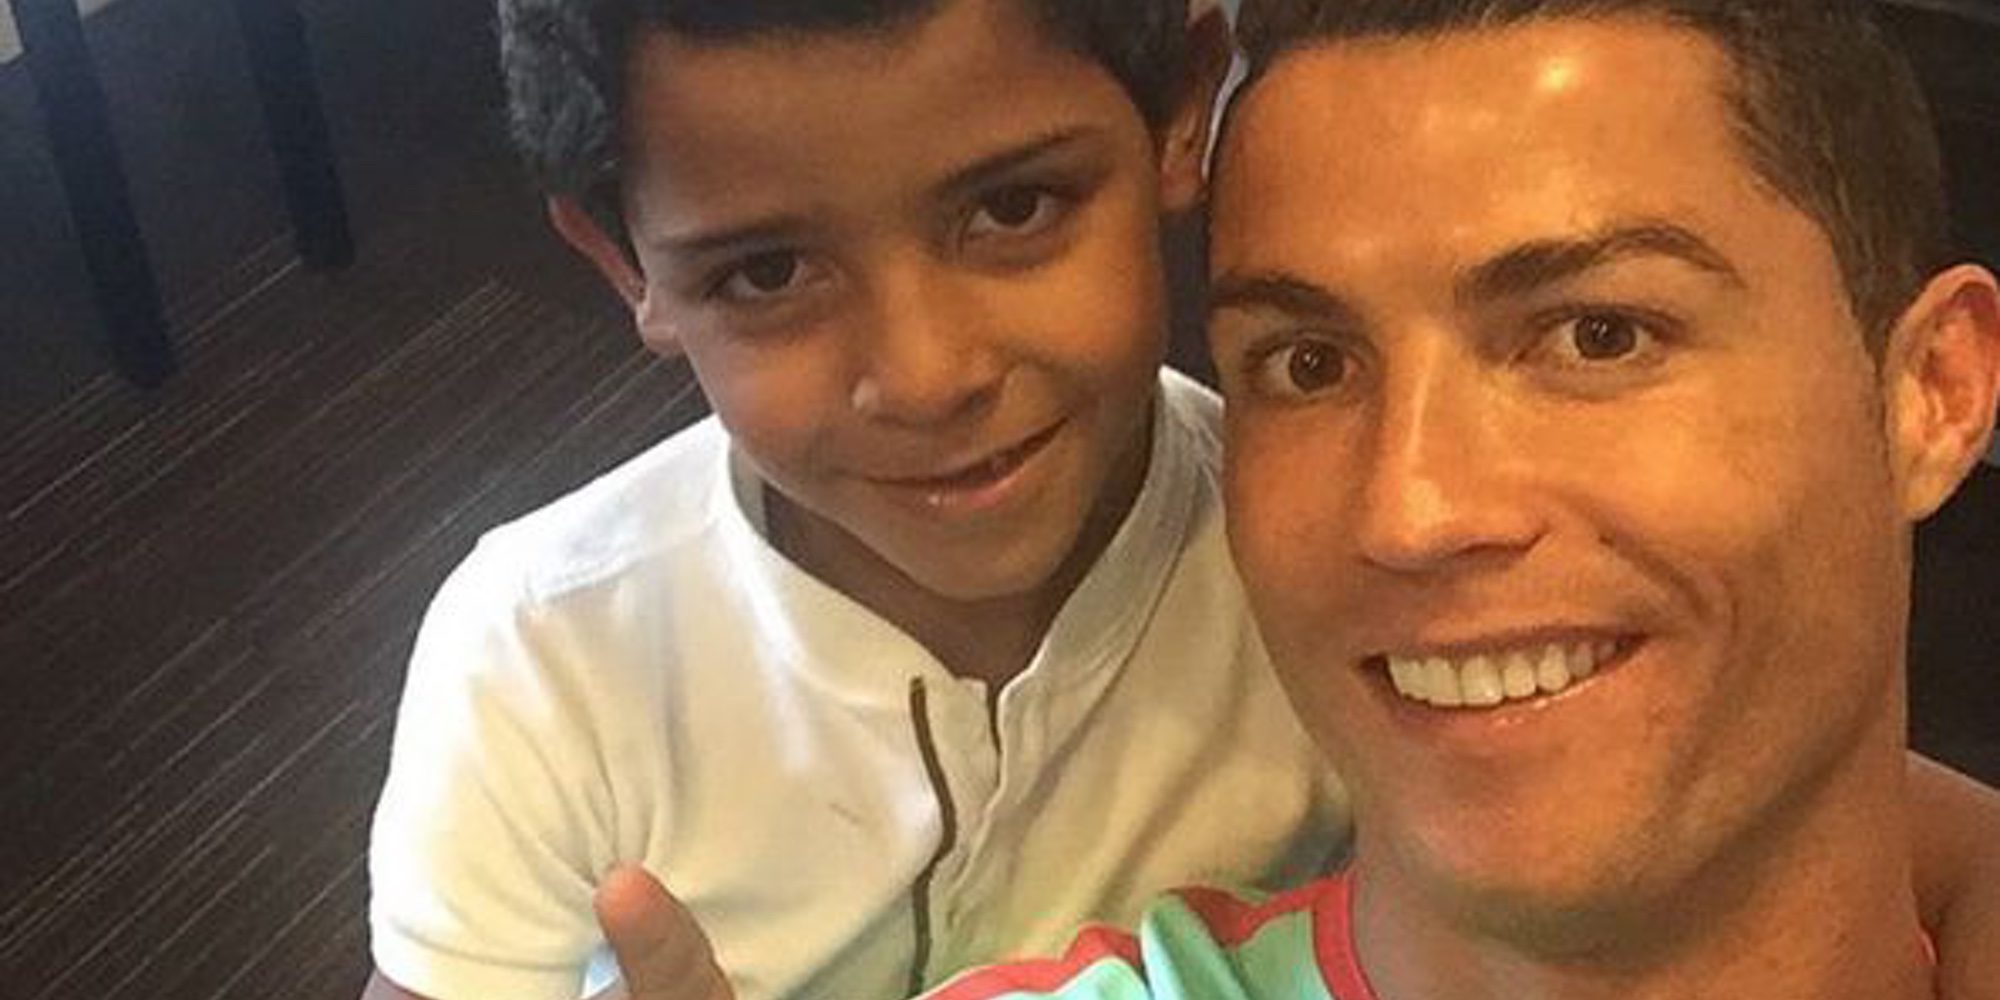 De tal palo, tal astilla: El hijo de Cristiano Ronaldo también gana trofeos por ser todo un pichichi